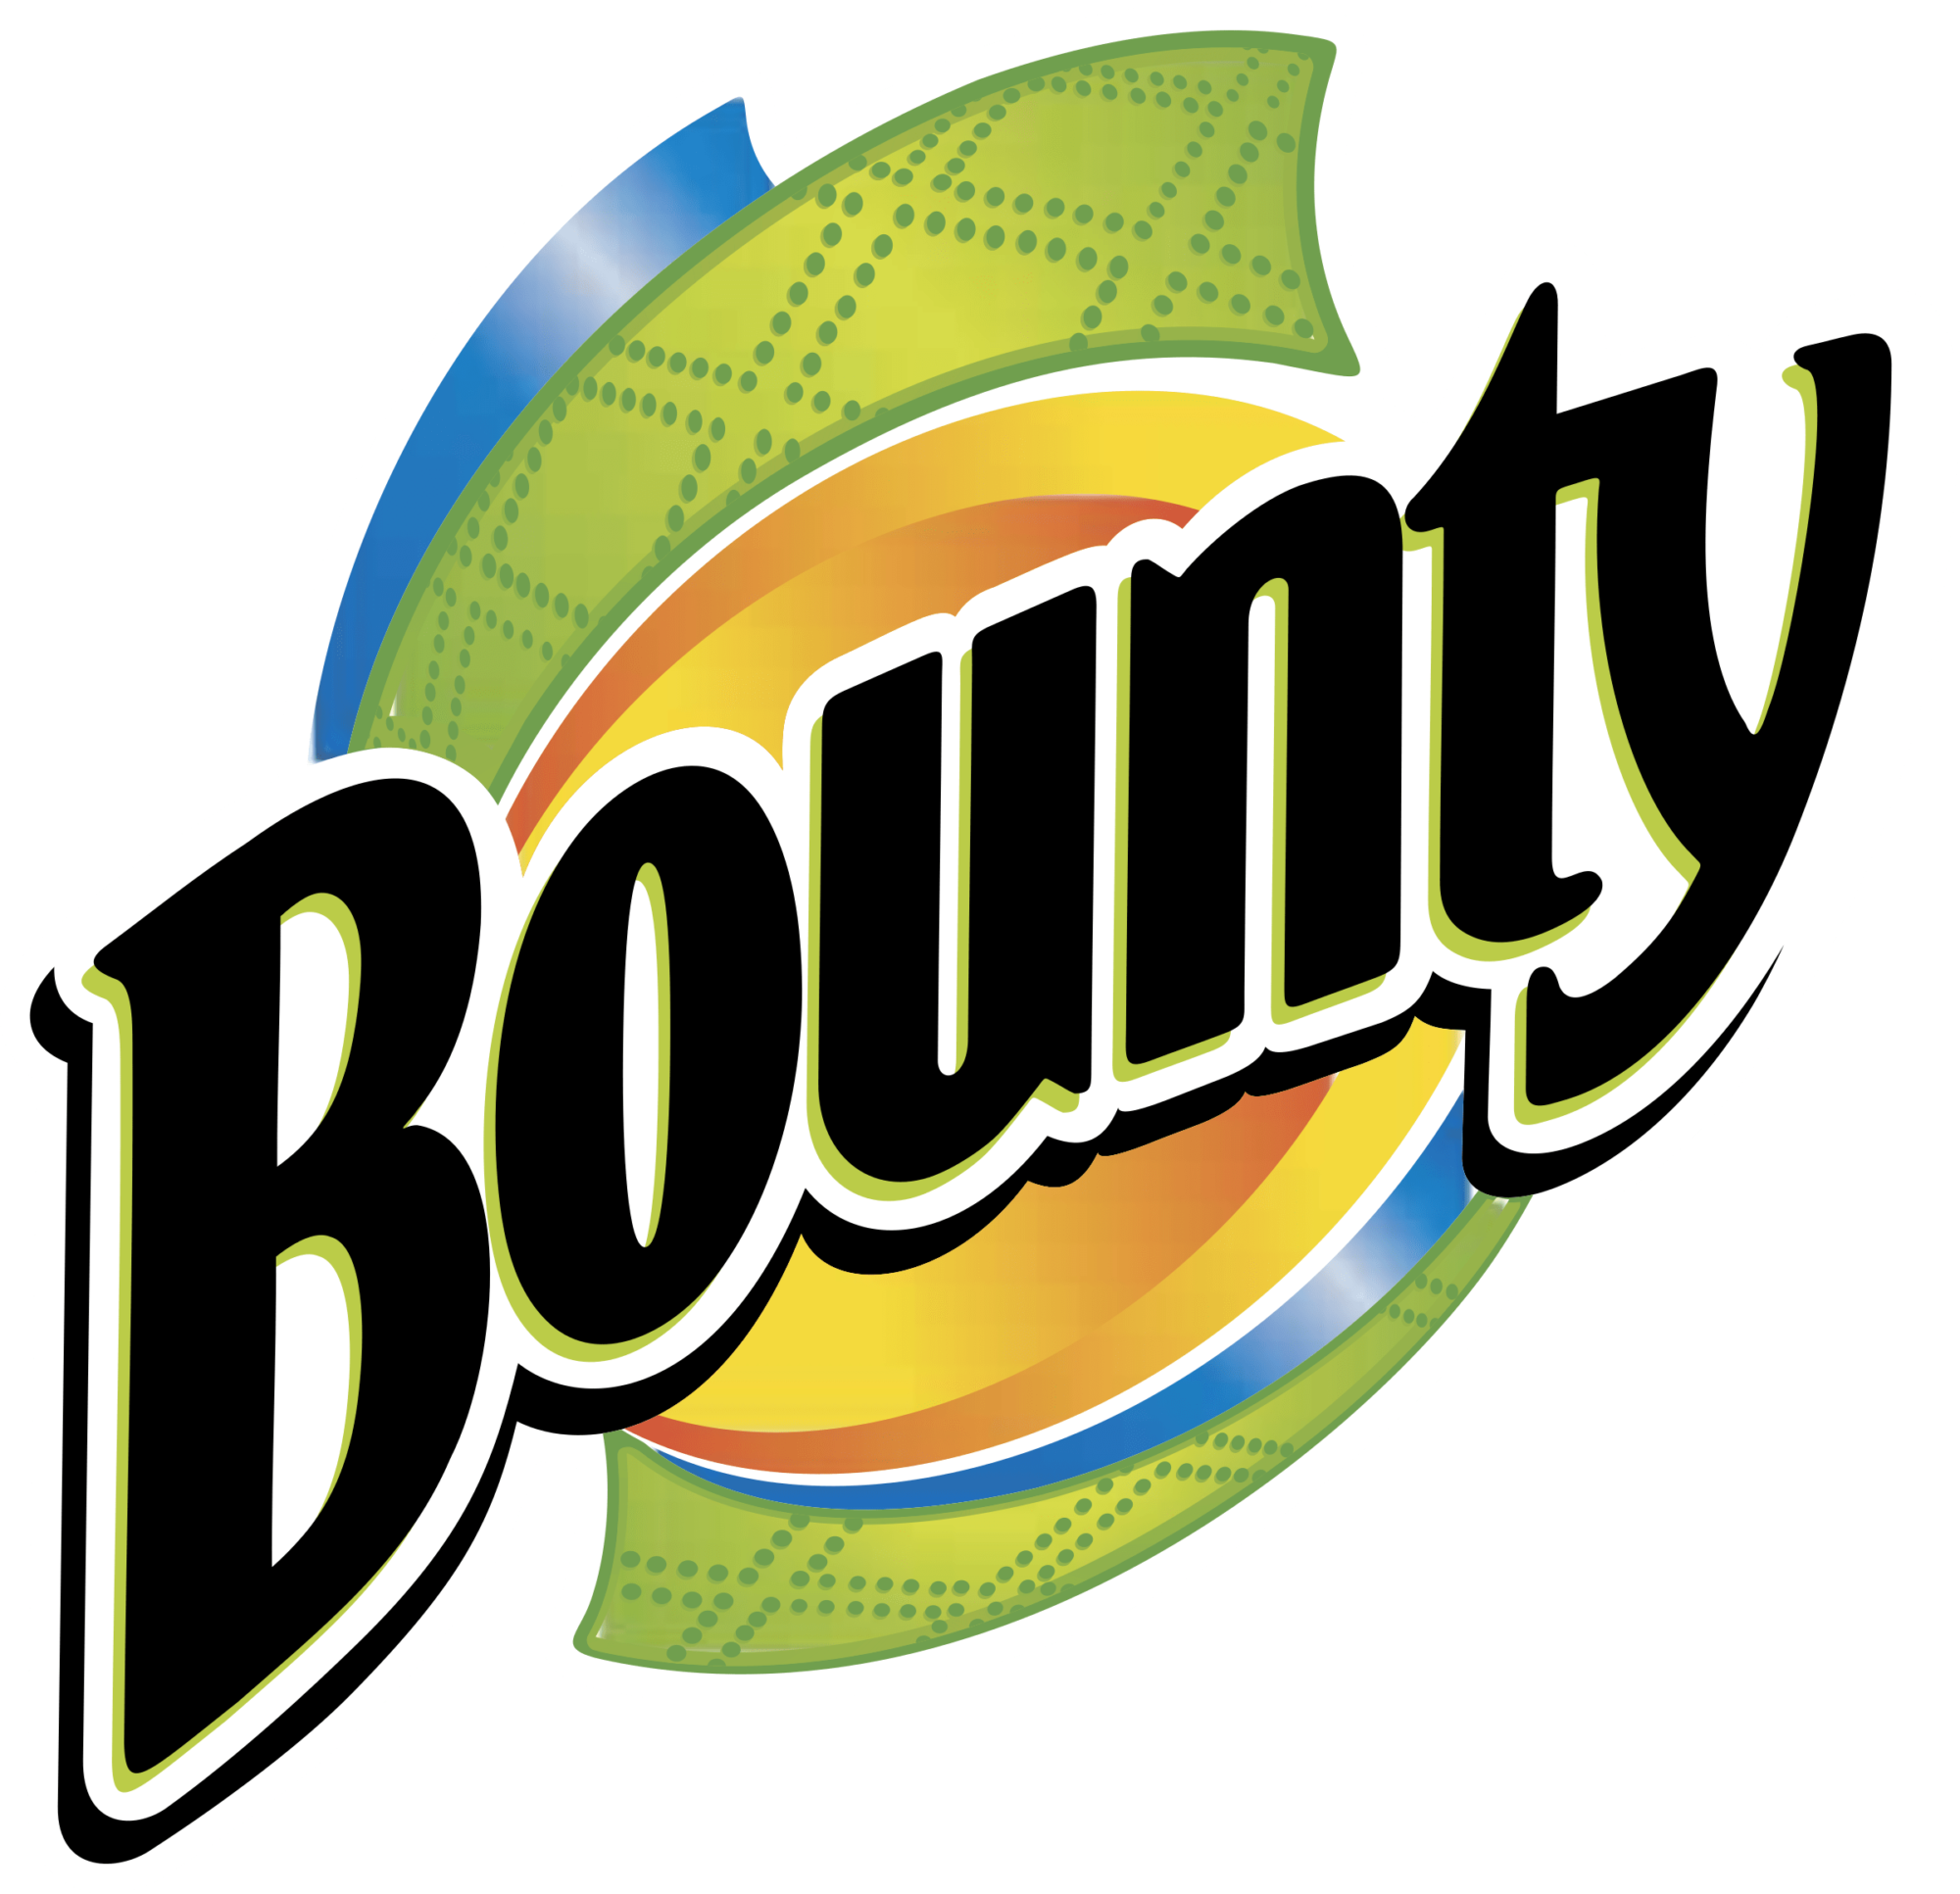 Bounty logo